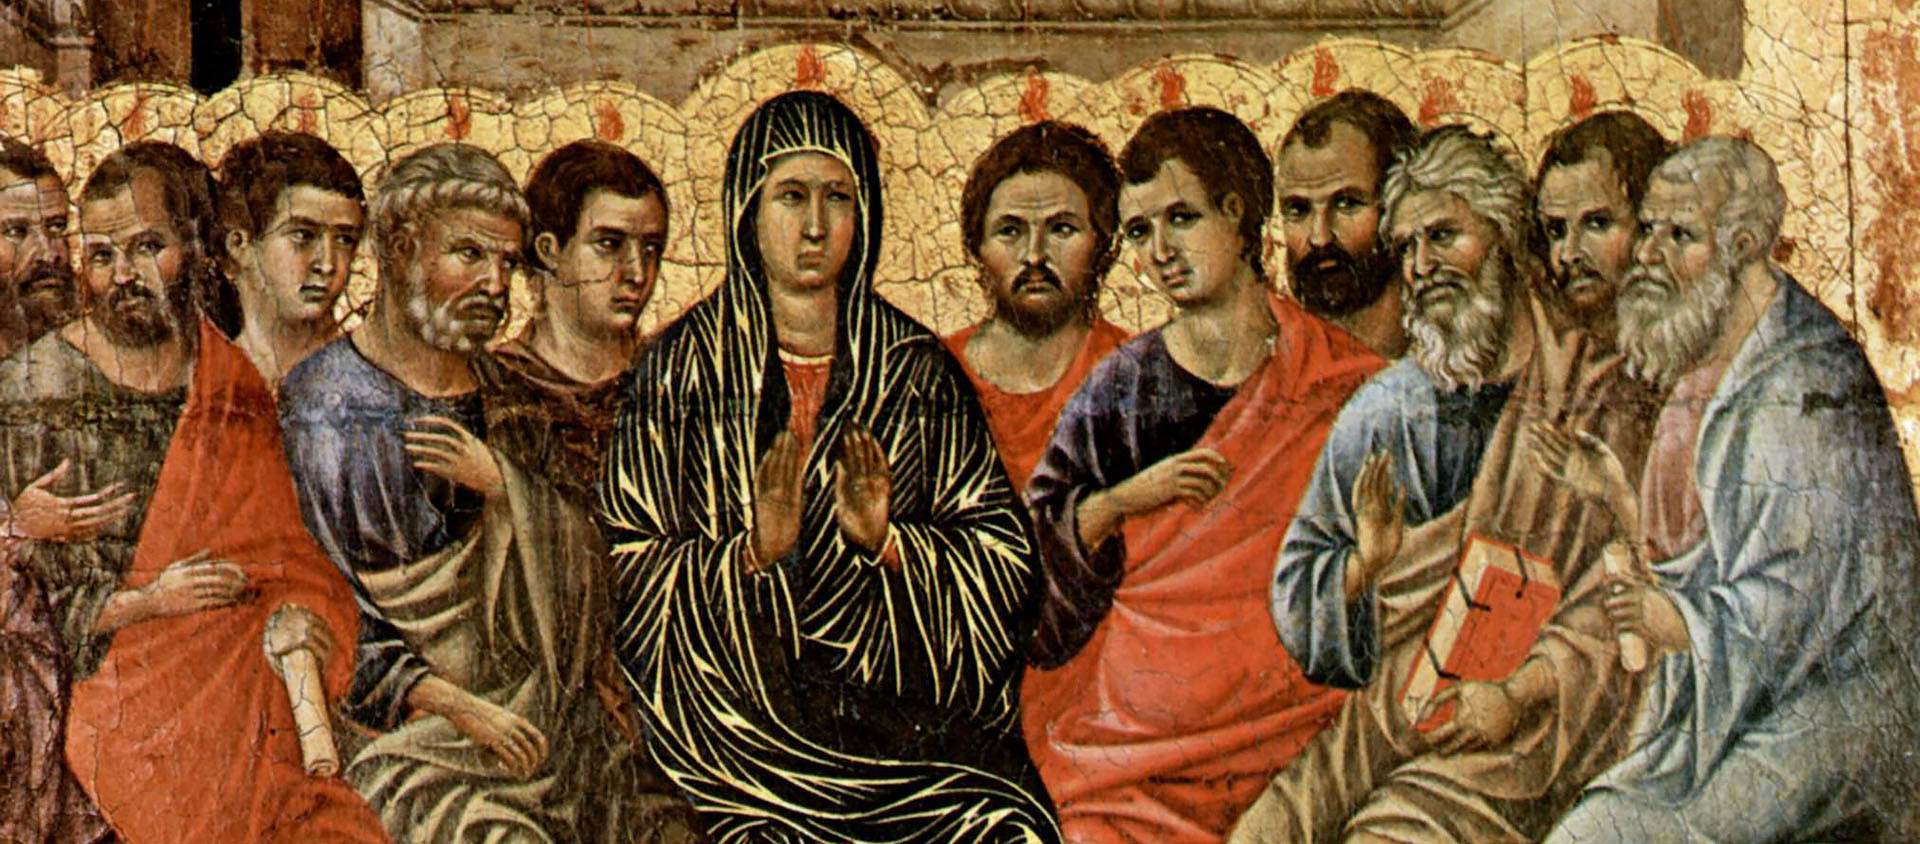 La pentecôte, rétable de la cathédrale de Sienne. Duccio di Buoninsegna, tempera sur bois, 1308-1311 | © Wiki media commons